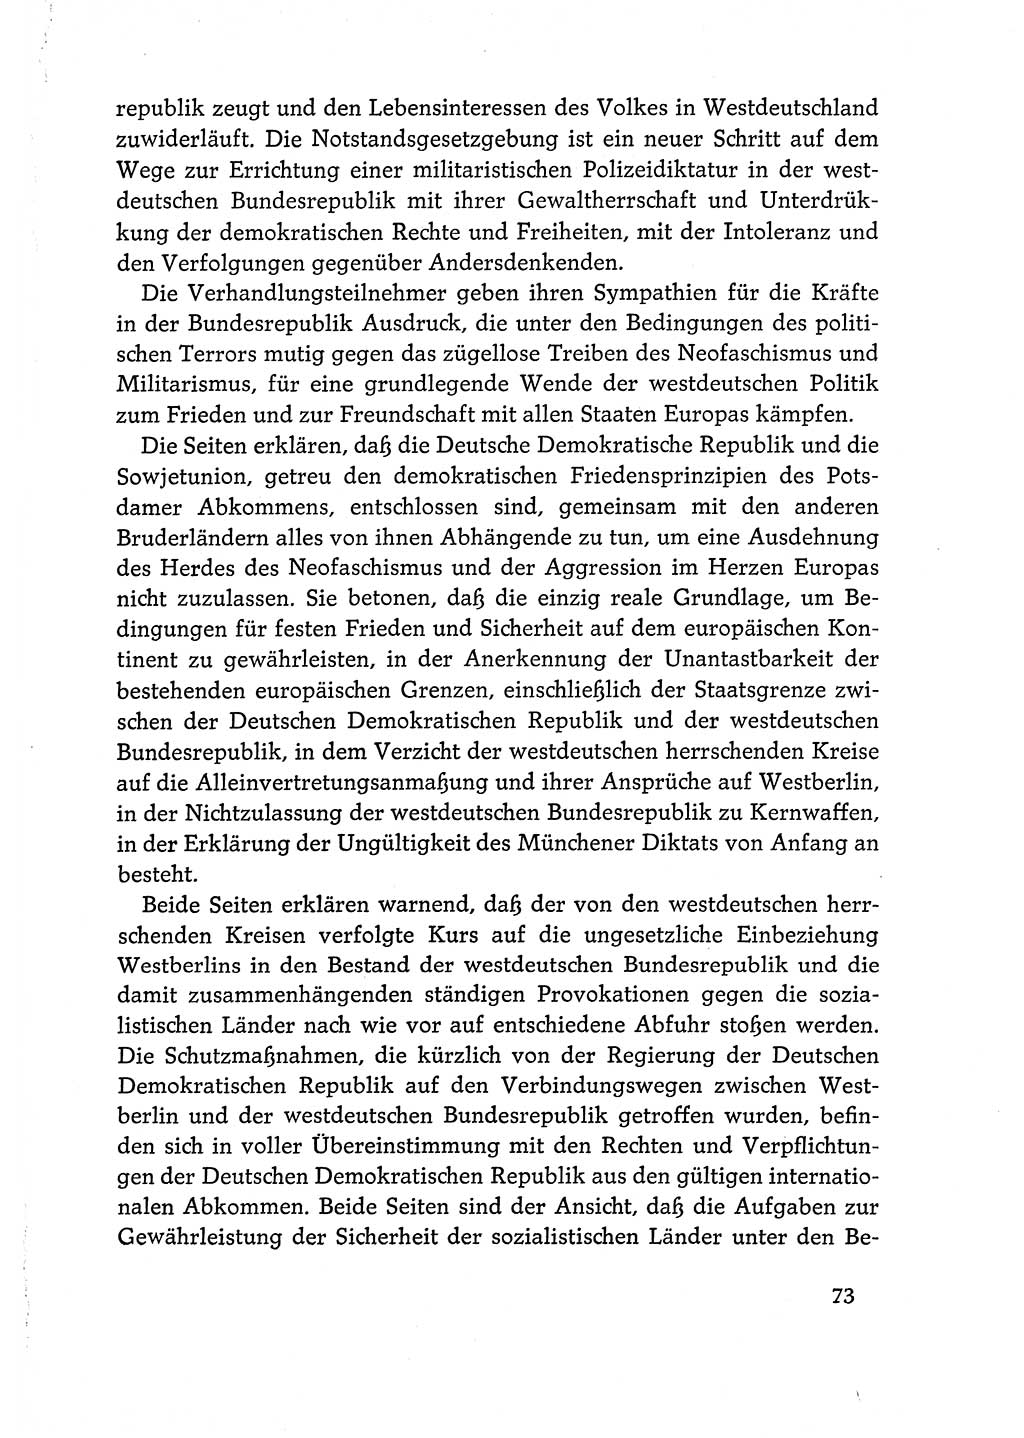 Dokumente der Sozialistischen Einheitspartei Deutschlands (SED) [Deutsche Demokratische Republik (DDR)] 1968-1969, Seite 73 (Dok. SED DDR 1968-1969, S. 73)